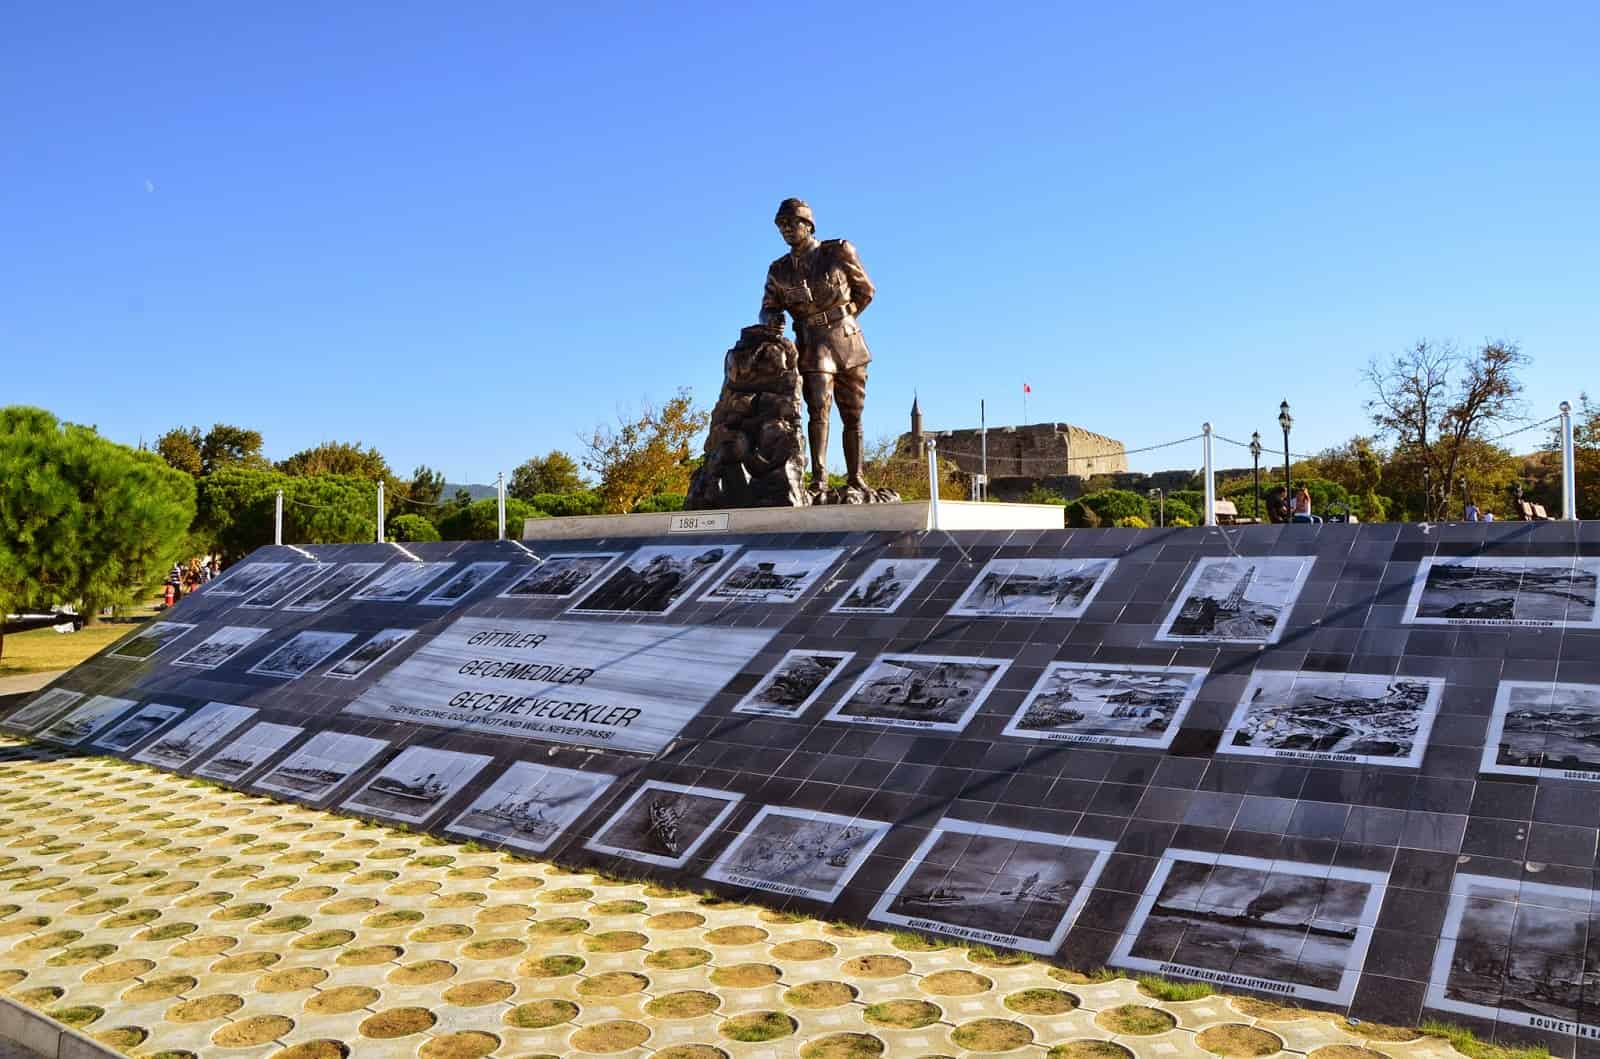 Atatürk monument in Çanakkale, Turkey